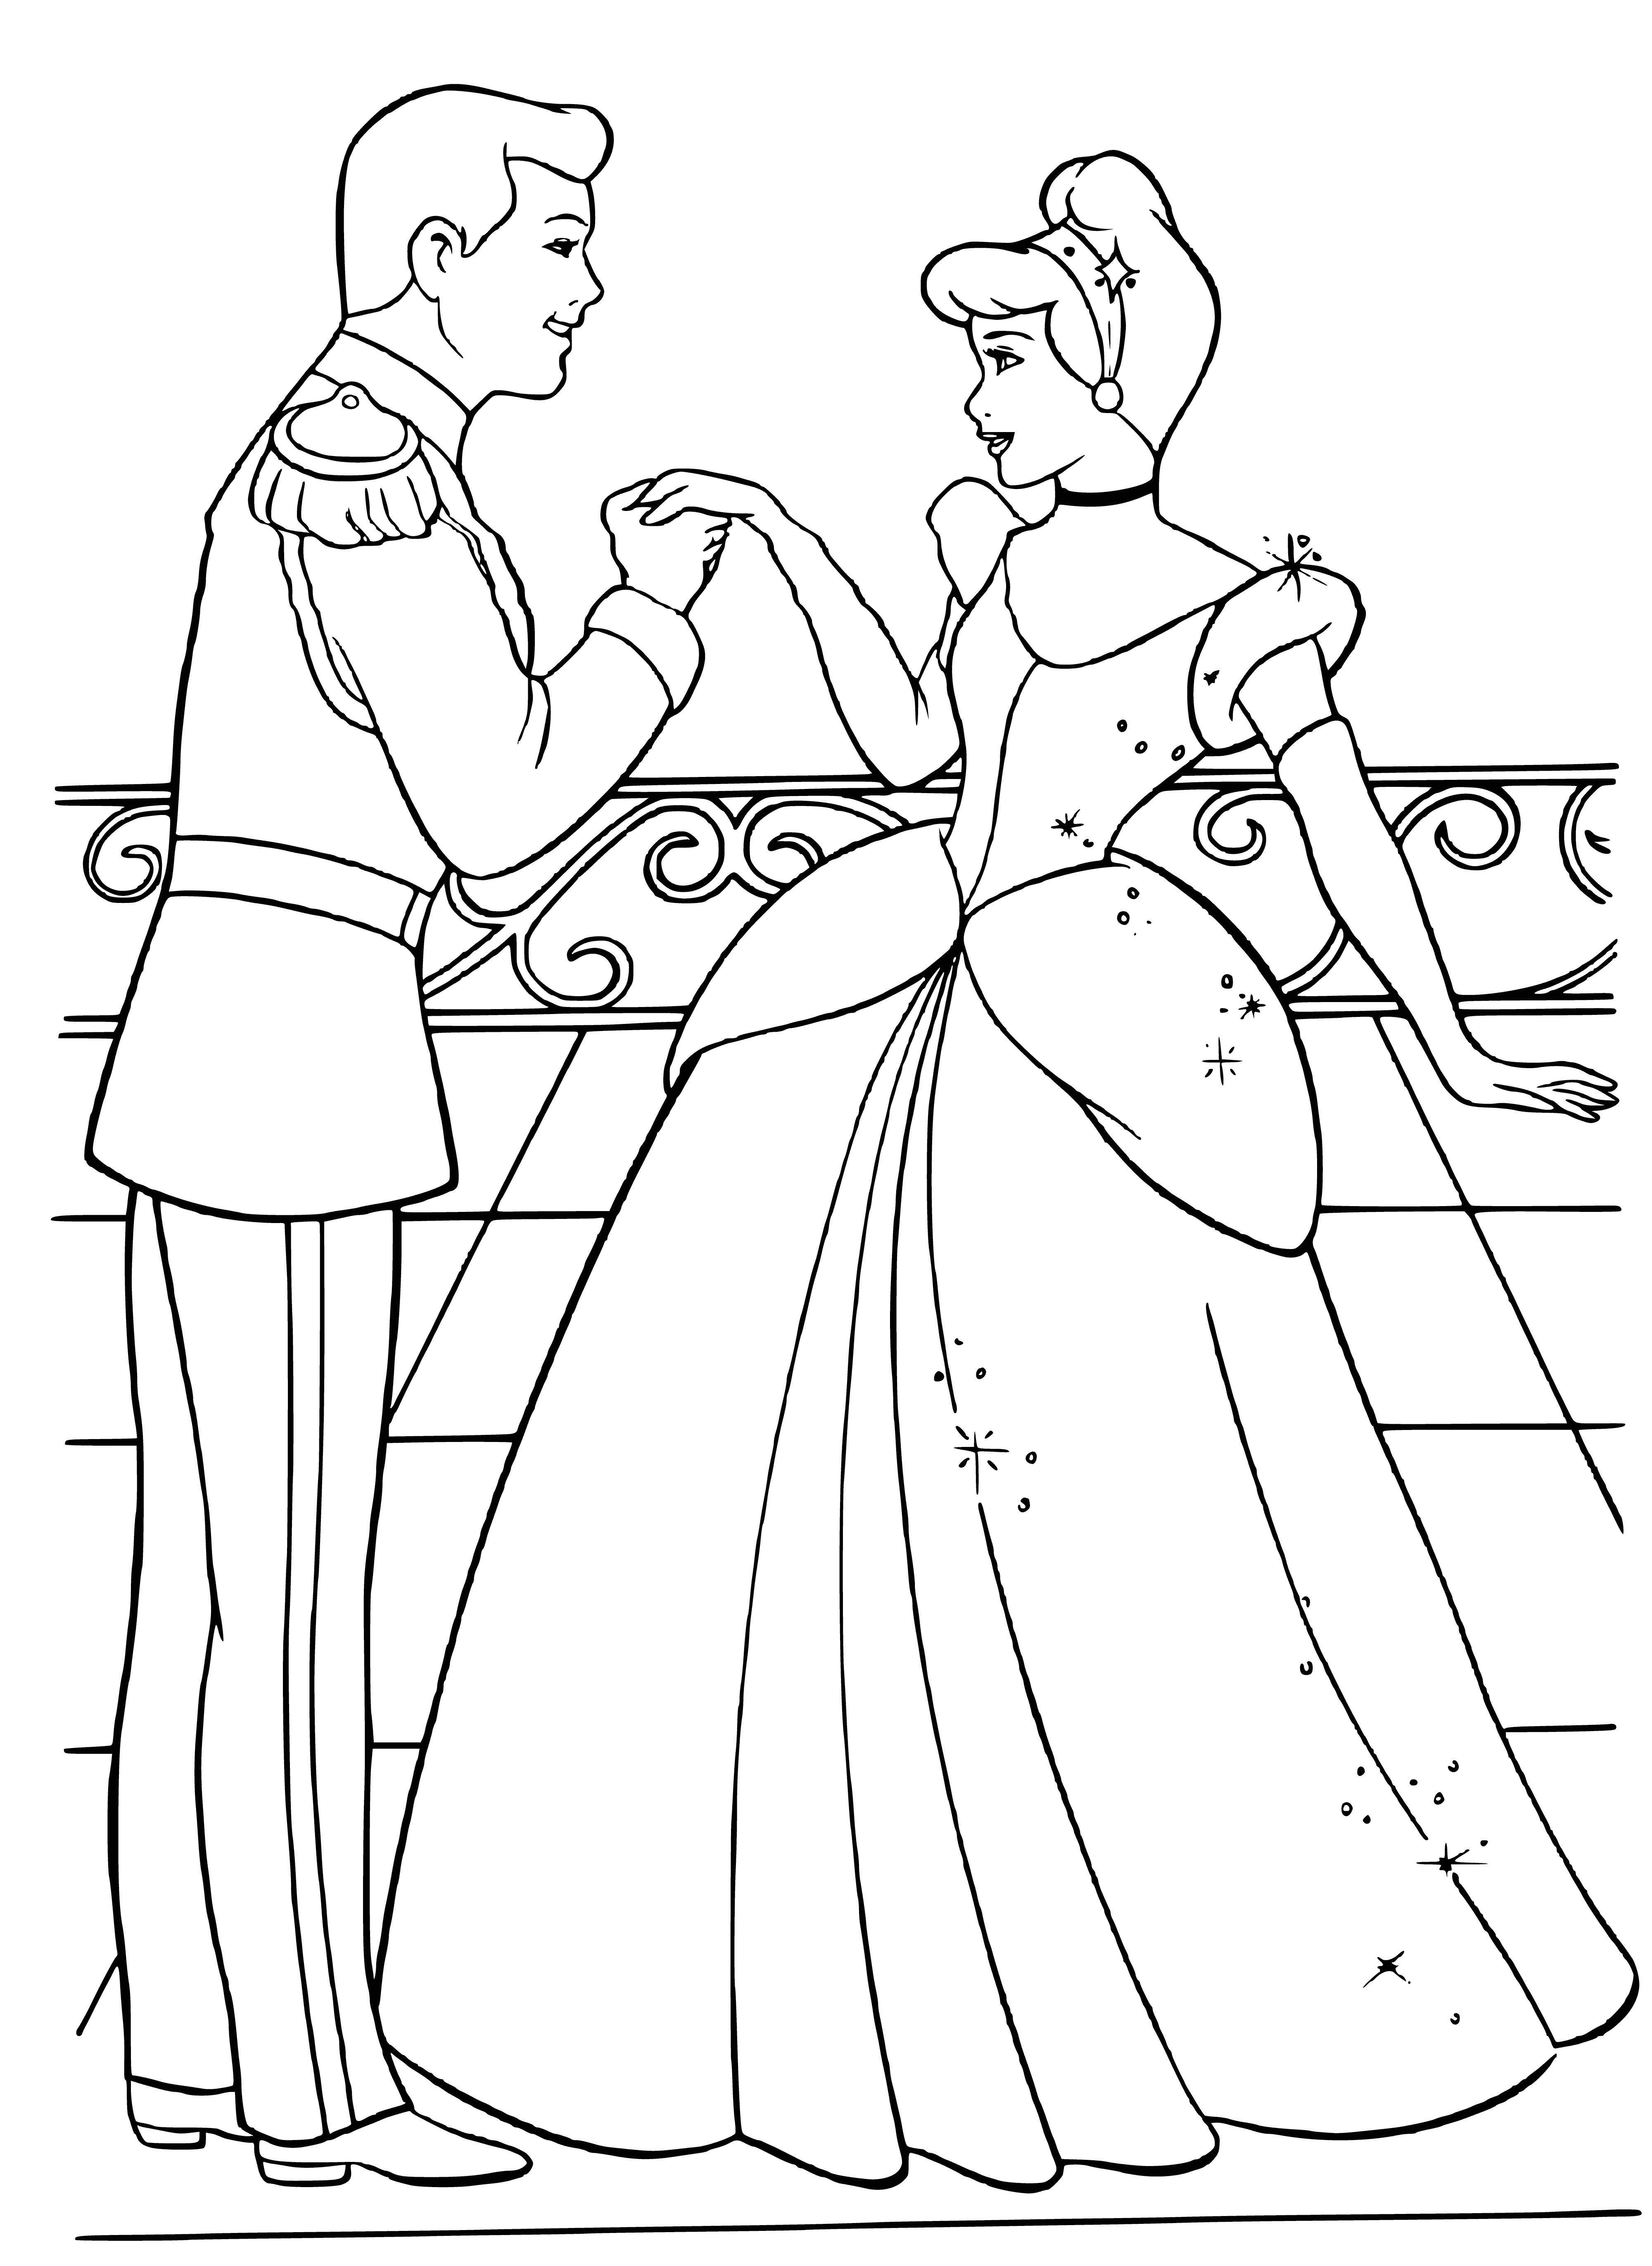 Prince meets Cinderella coloring page